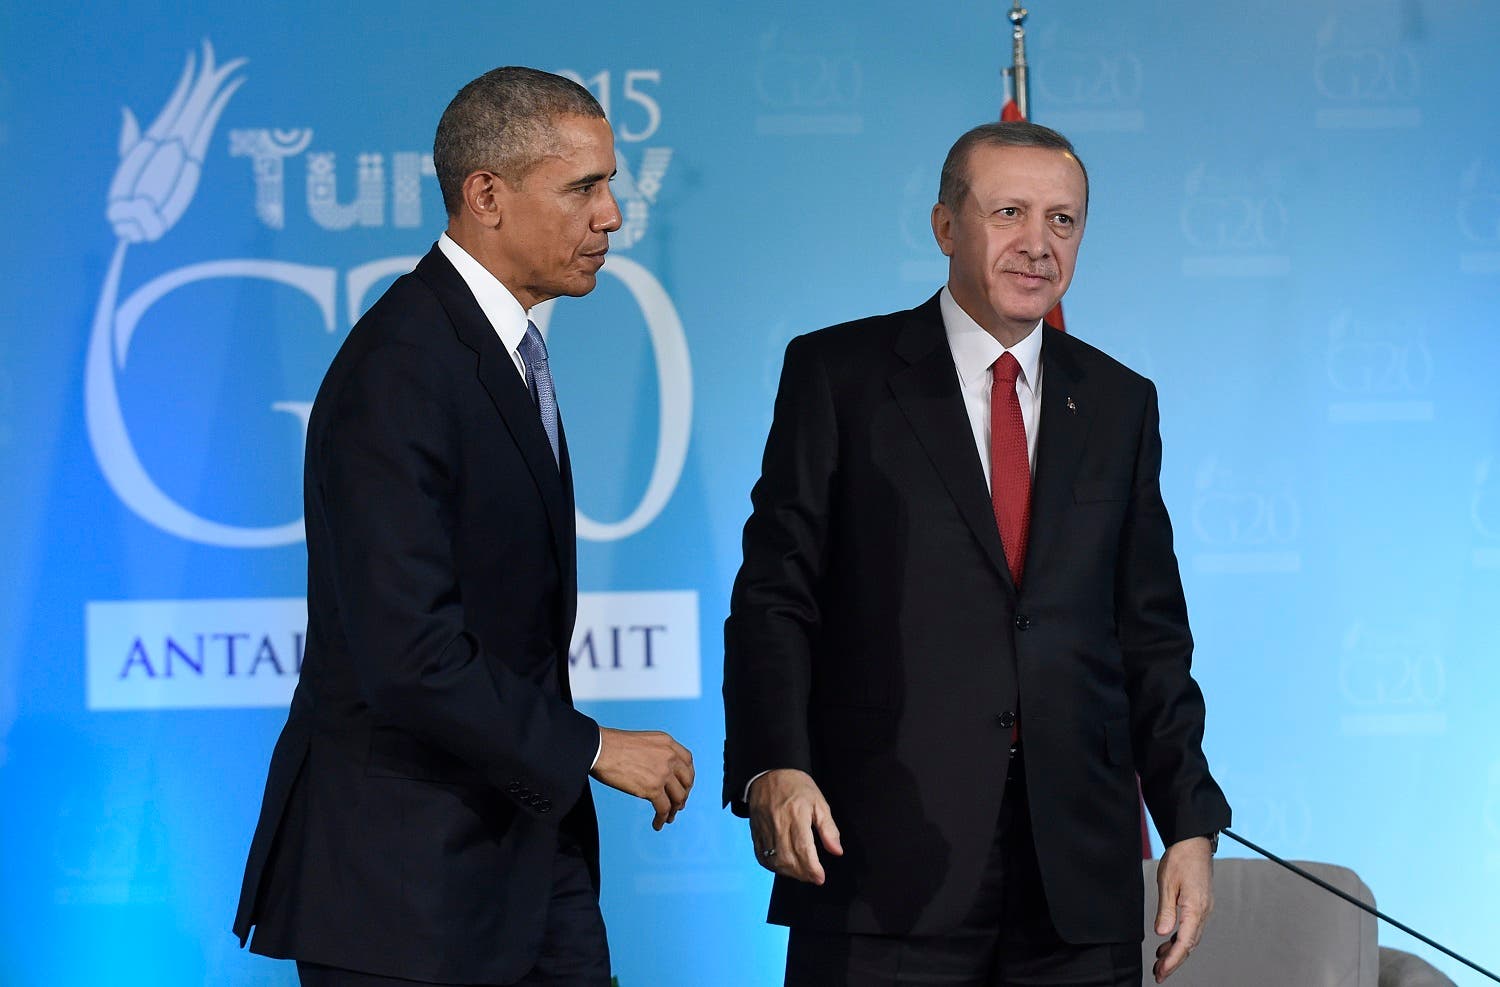 obama erdogan file photo AP